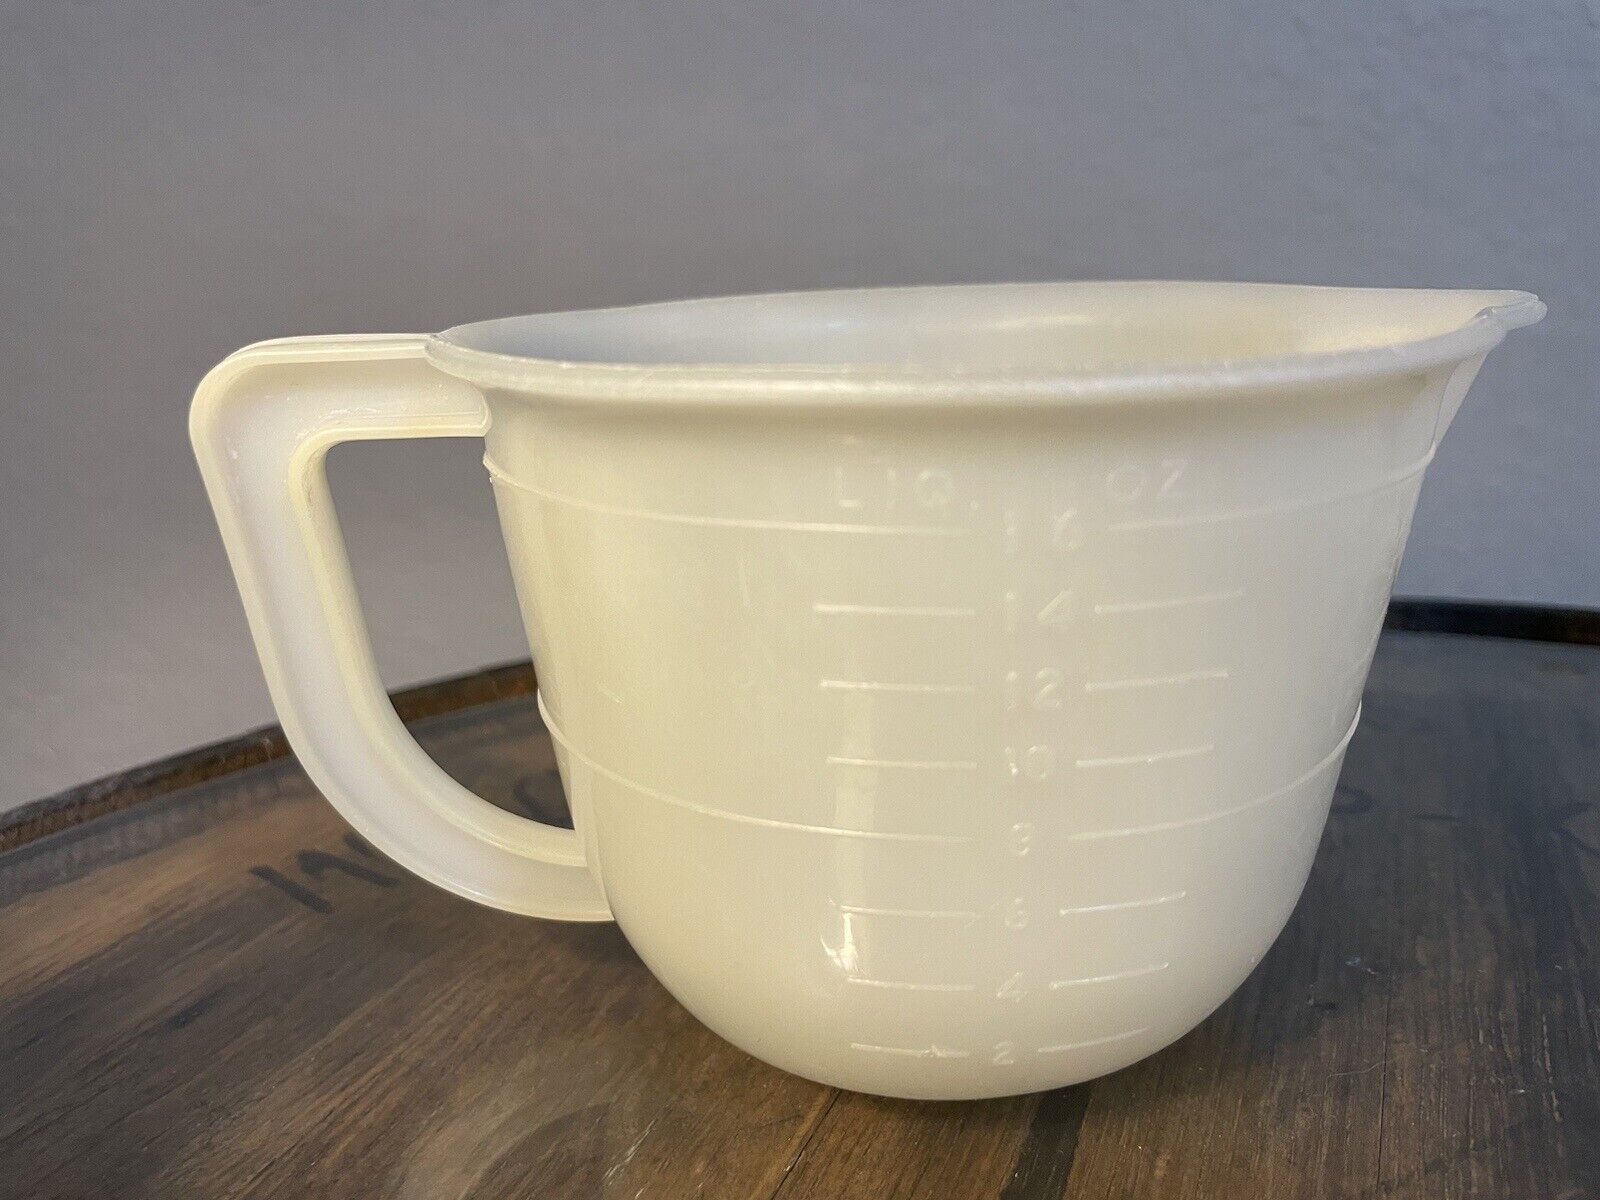 50s Retro Vintage Lustro - Ware 2 Cup Kitchen Measuring Cup